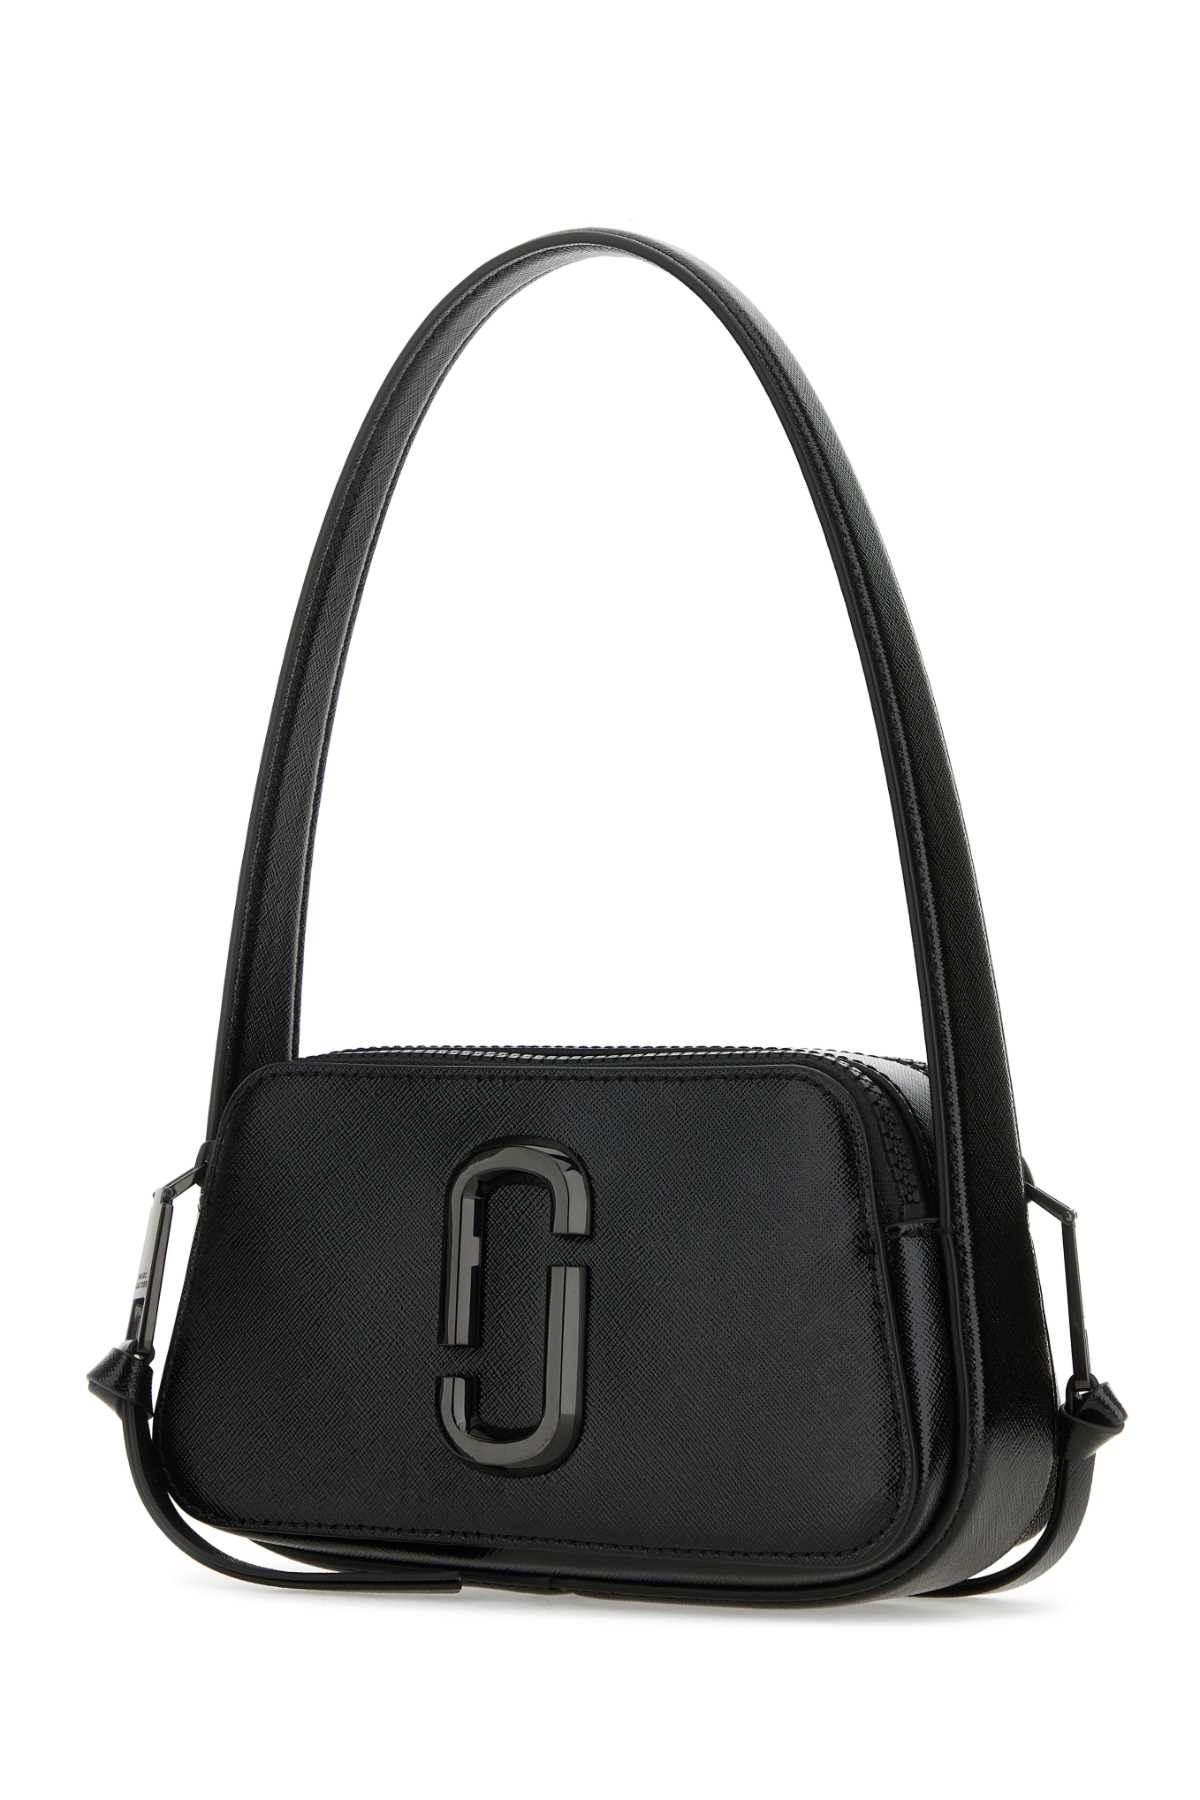 Shop Marc Jacobs Black Leather The Slingshot Shoulder Bag